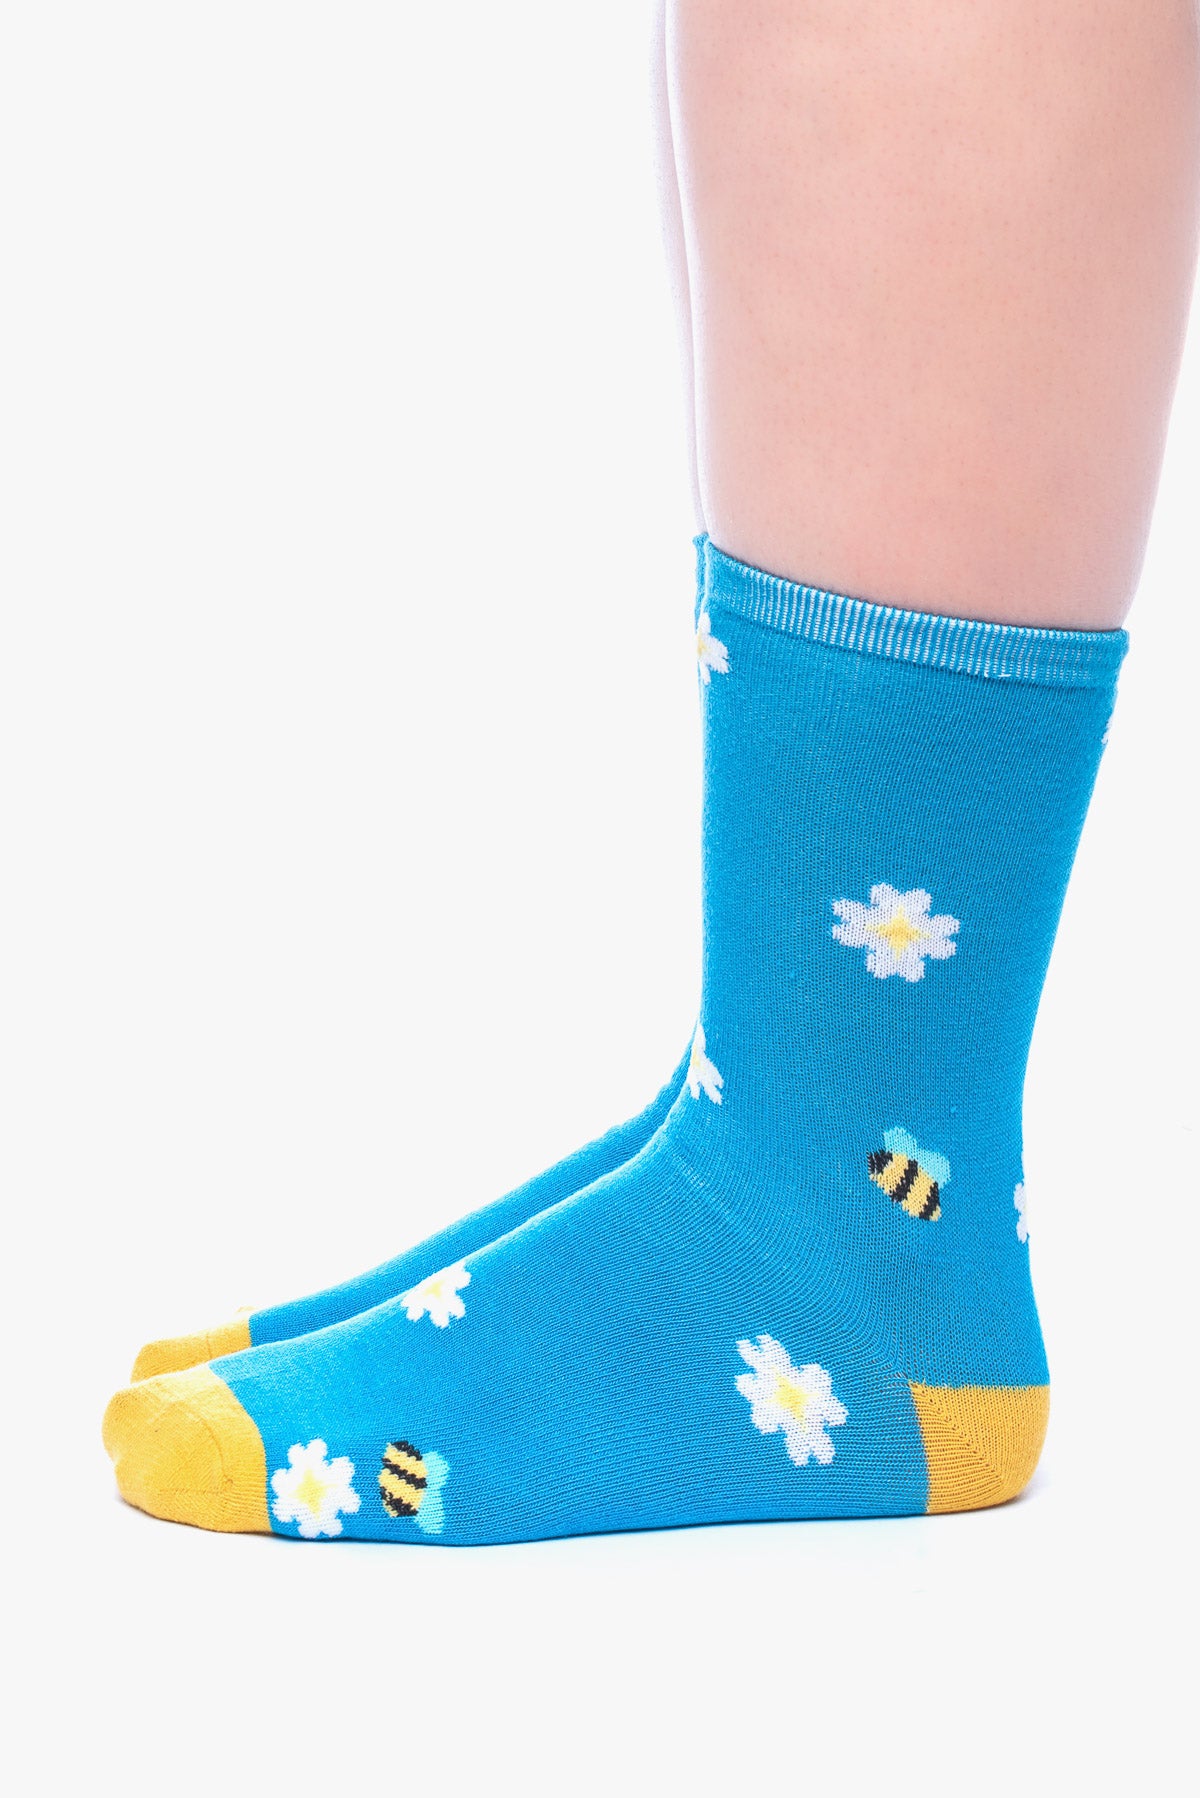 BAMBOO 3 bees socks